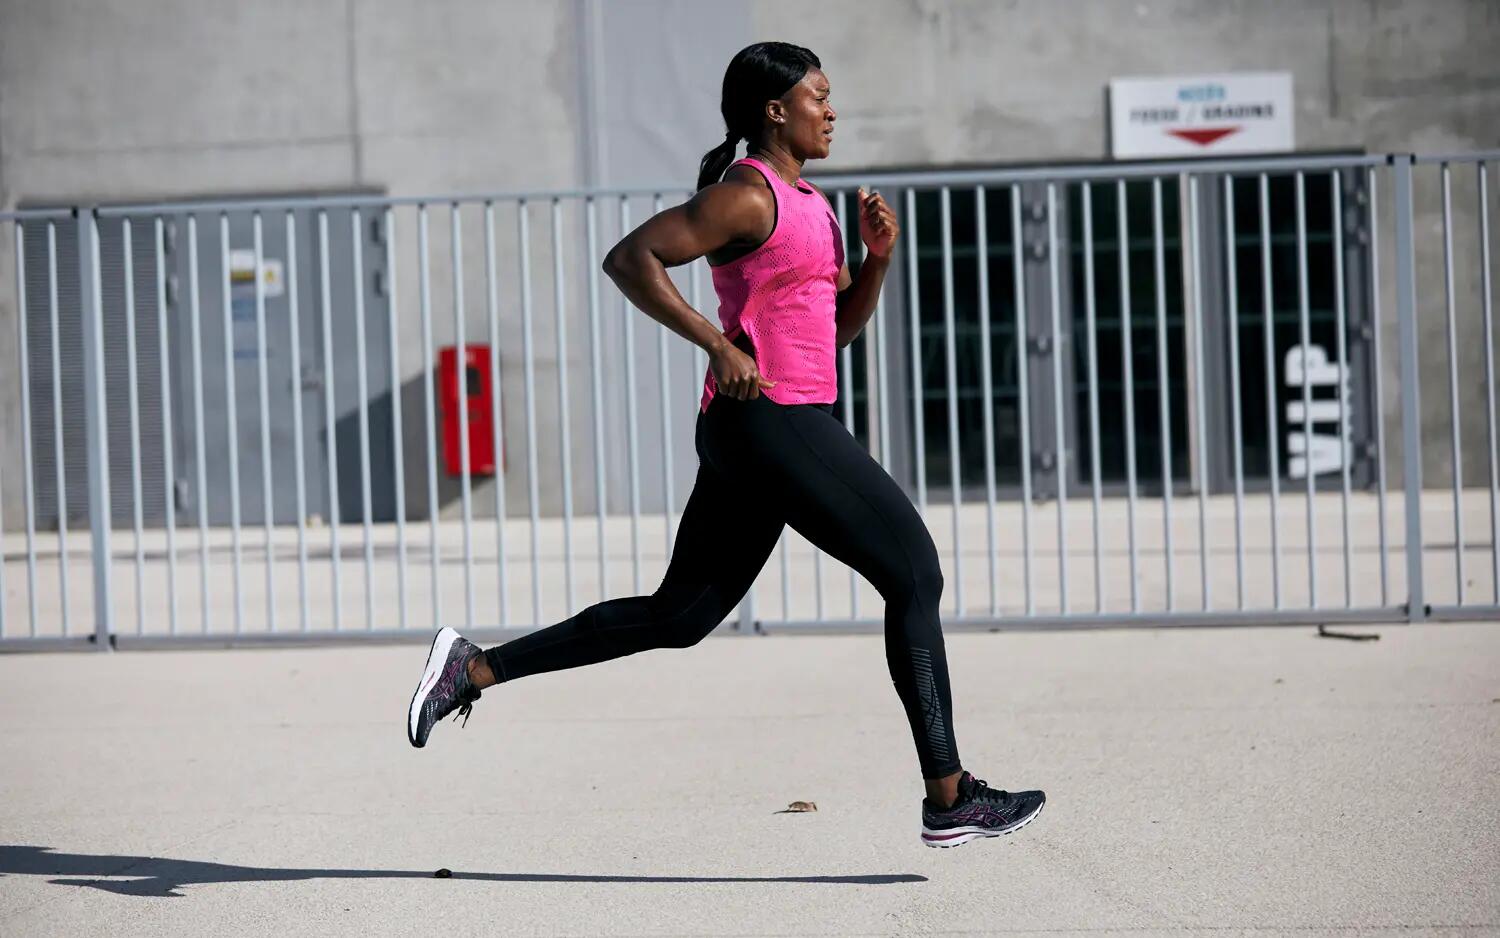 Kobieta w stroju biegowym biegająca po mięscie